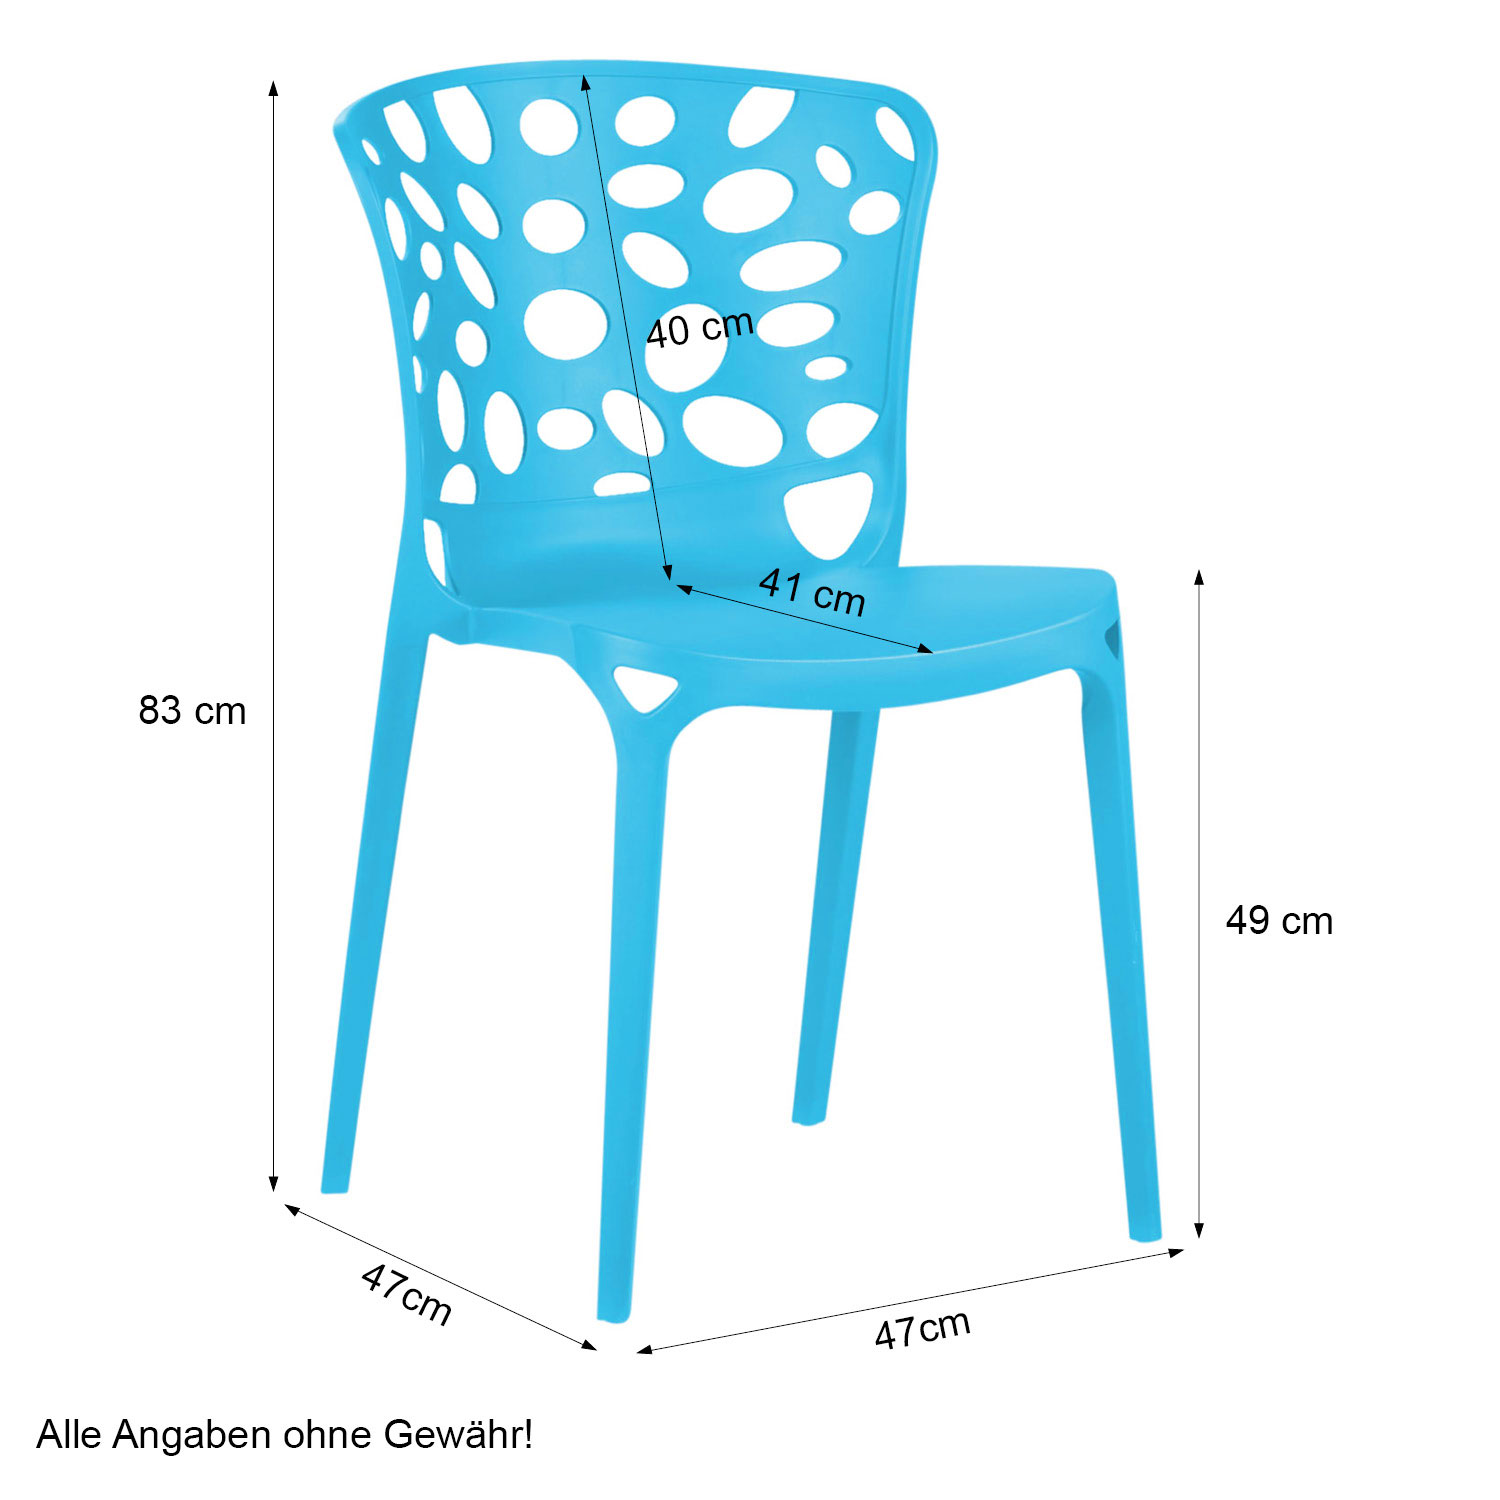 Chaise de jardin Lot de 2 Moderne Bleu Chaises design Plastique Chaises exterieur Chaises empilable Chaise de cuisine